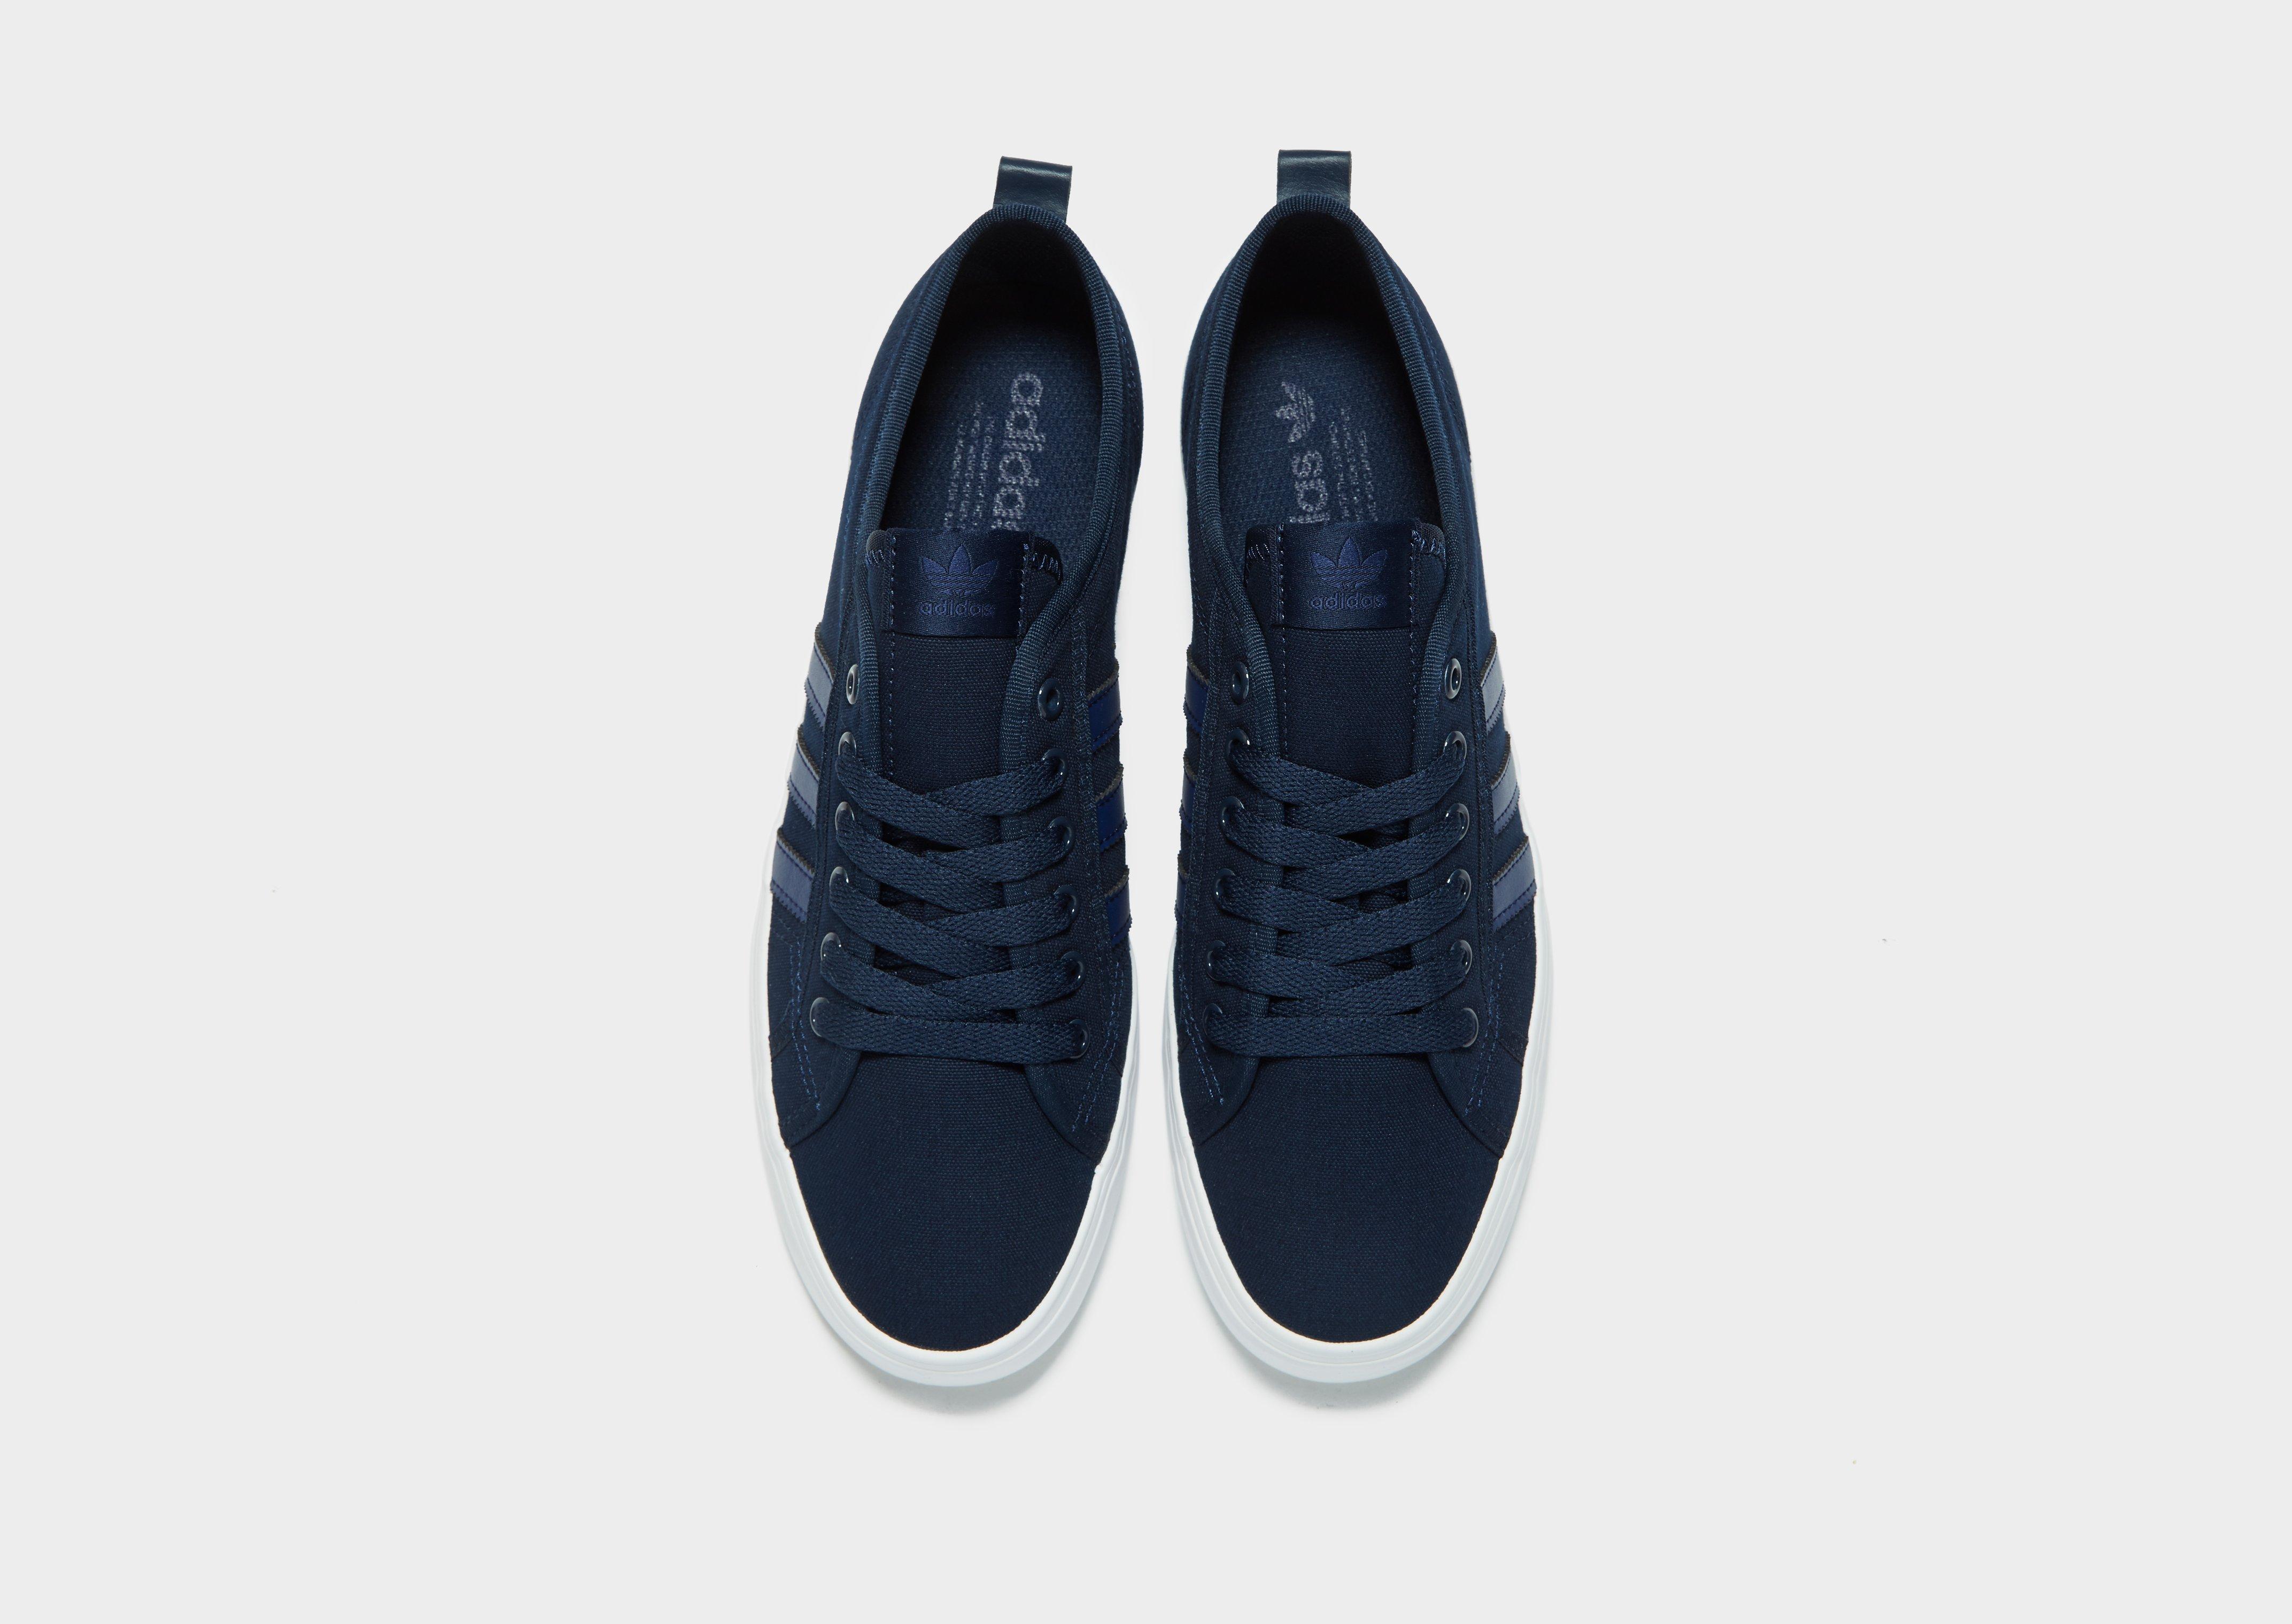 adidas Originals Canvas Nizza Lo in Navy (Blue) for Men - Lyst